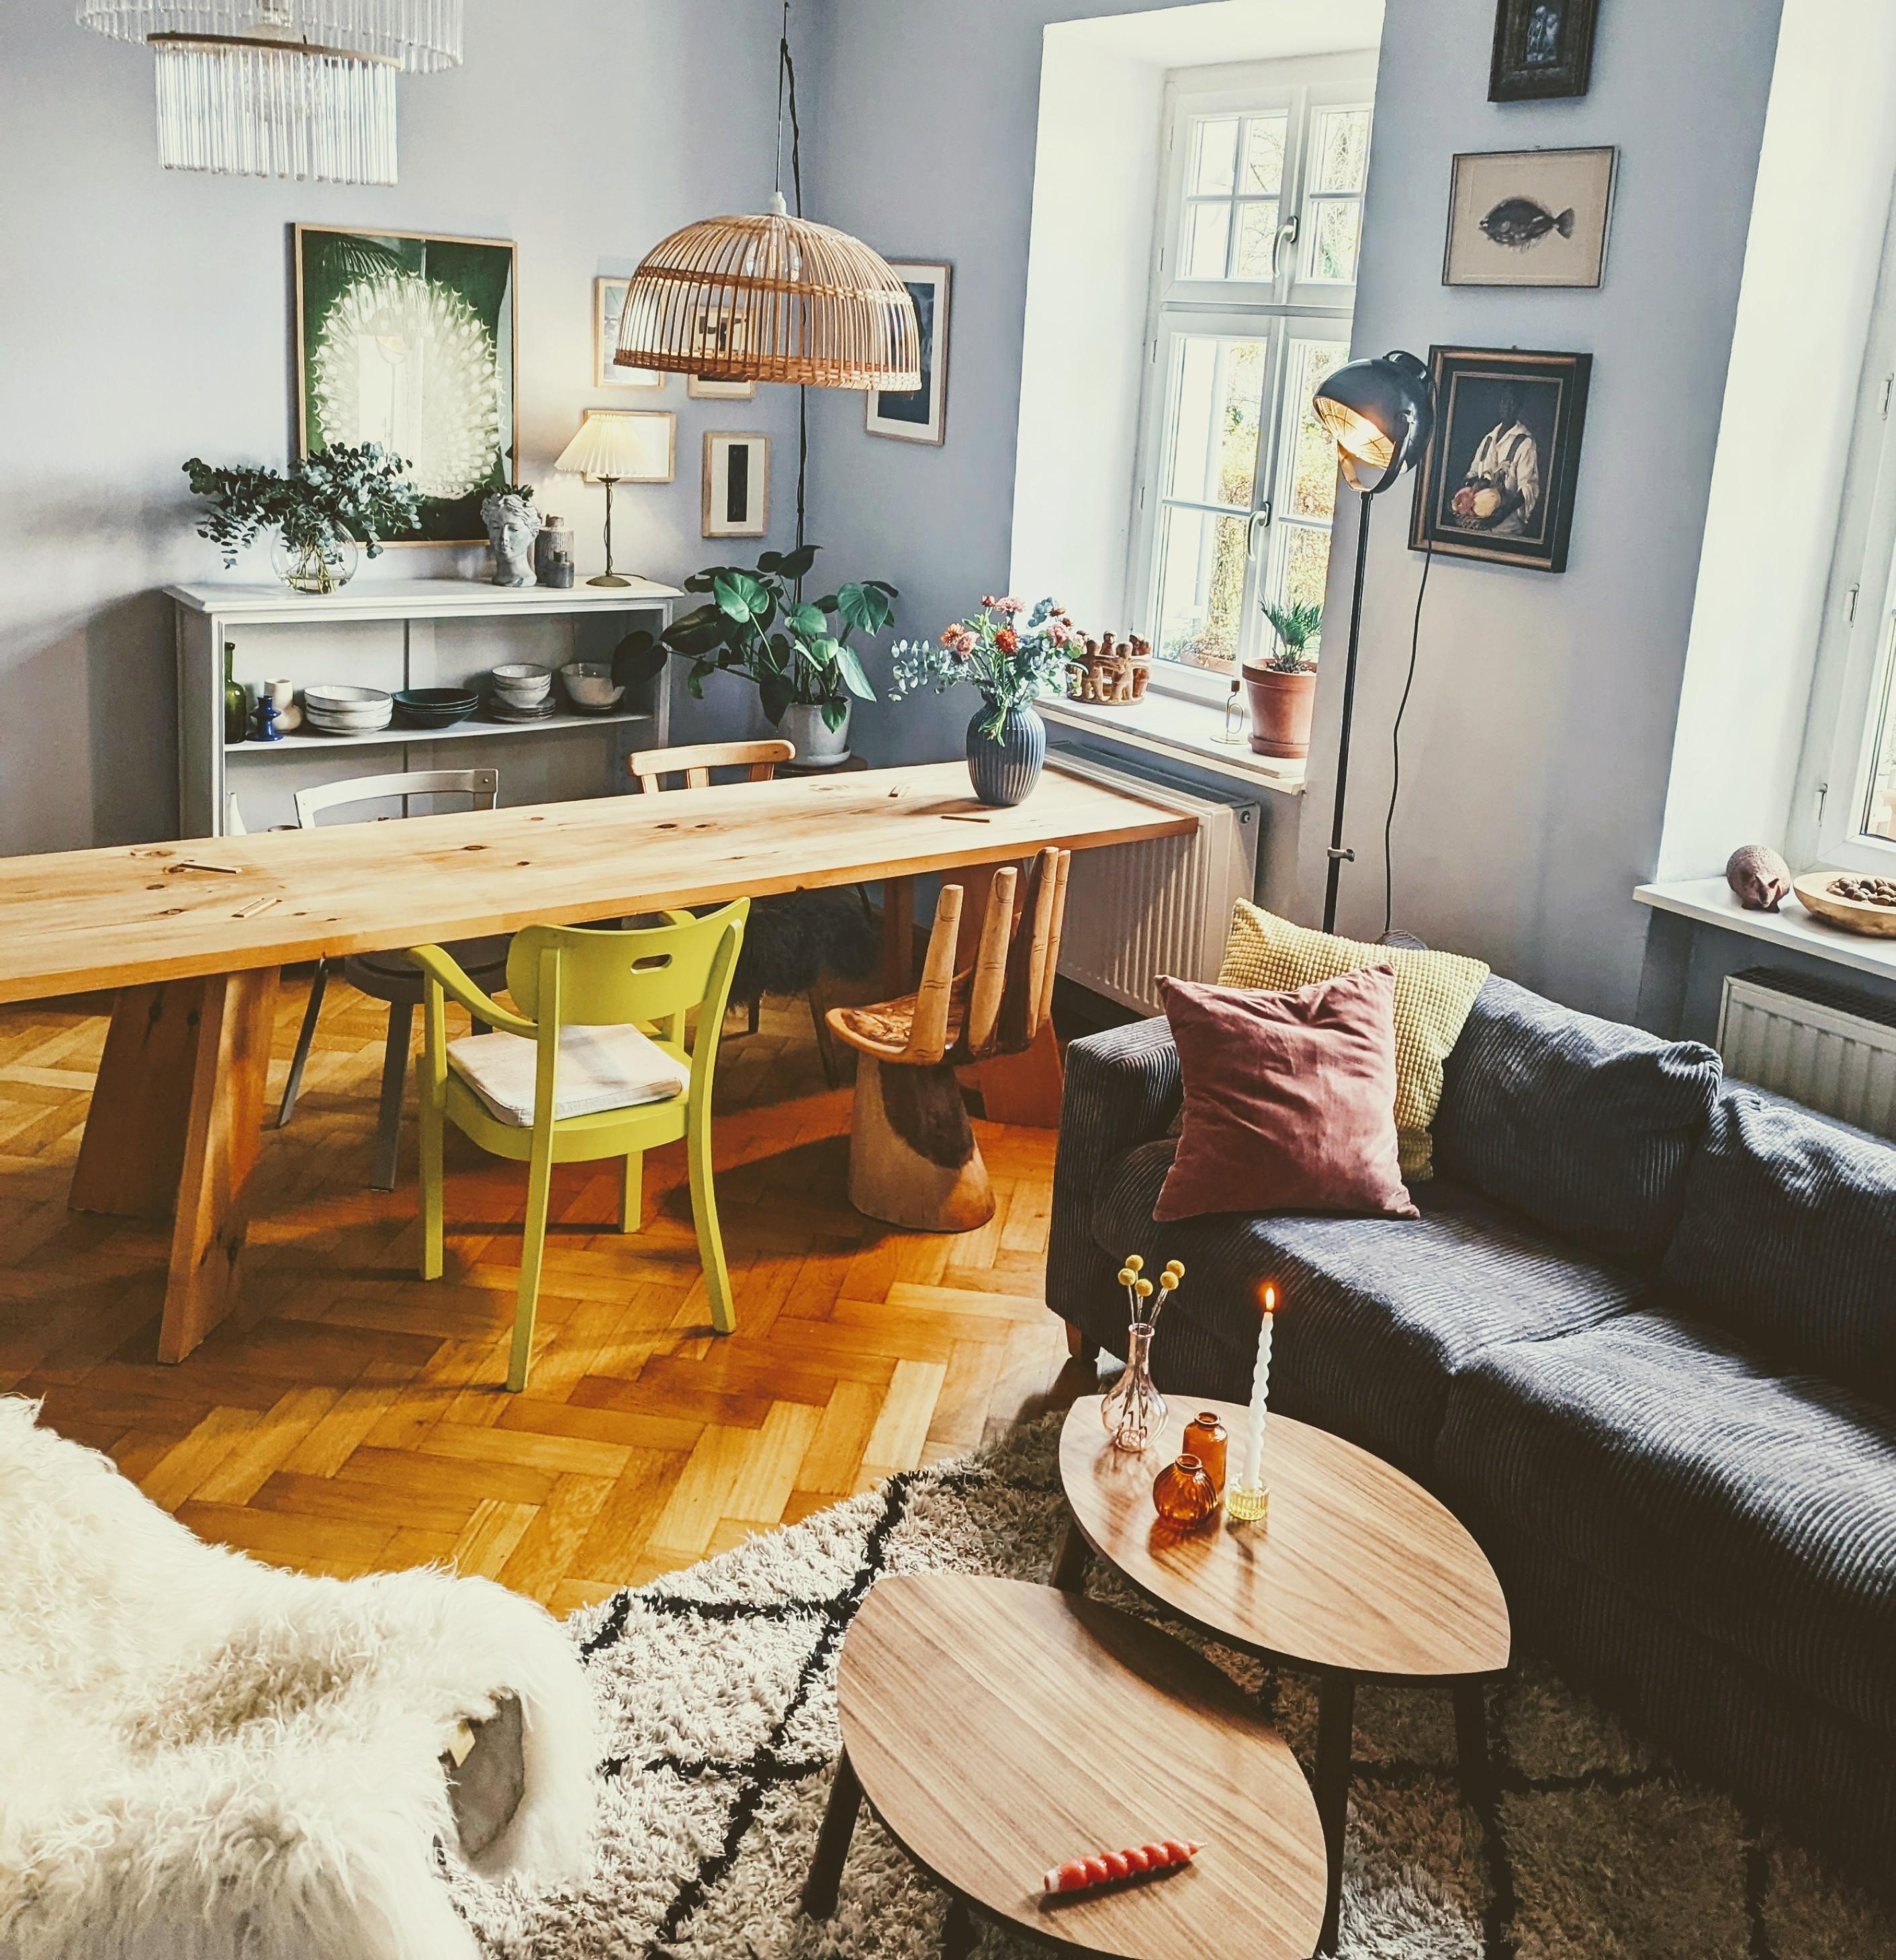 #Wohnzimmer #Altbau #Esszimmer
#Lieblingszimmer 
# Novemberstimmung